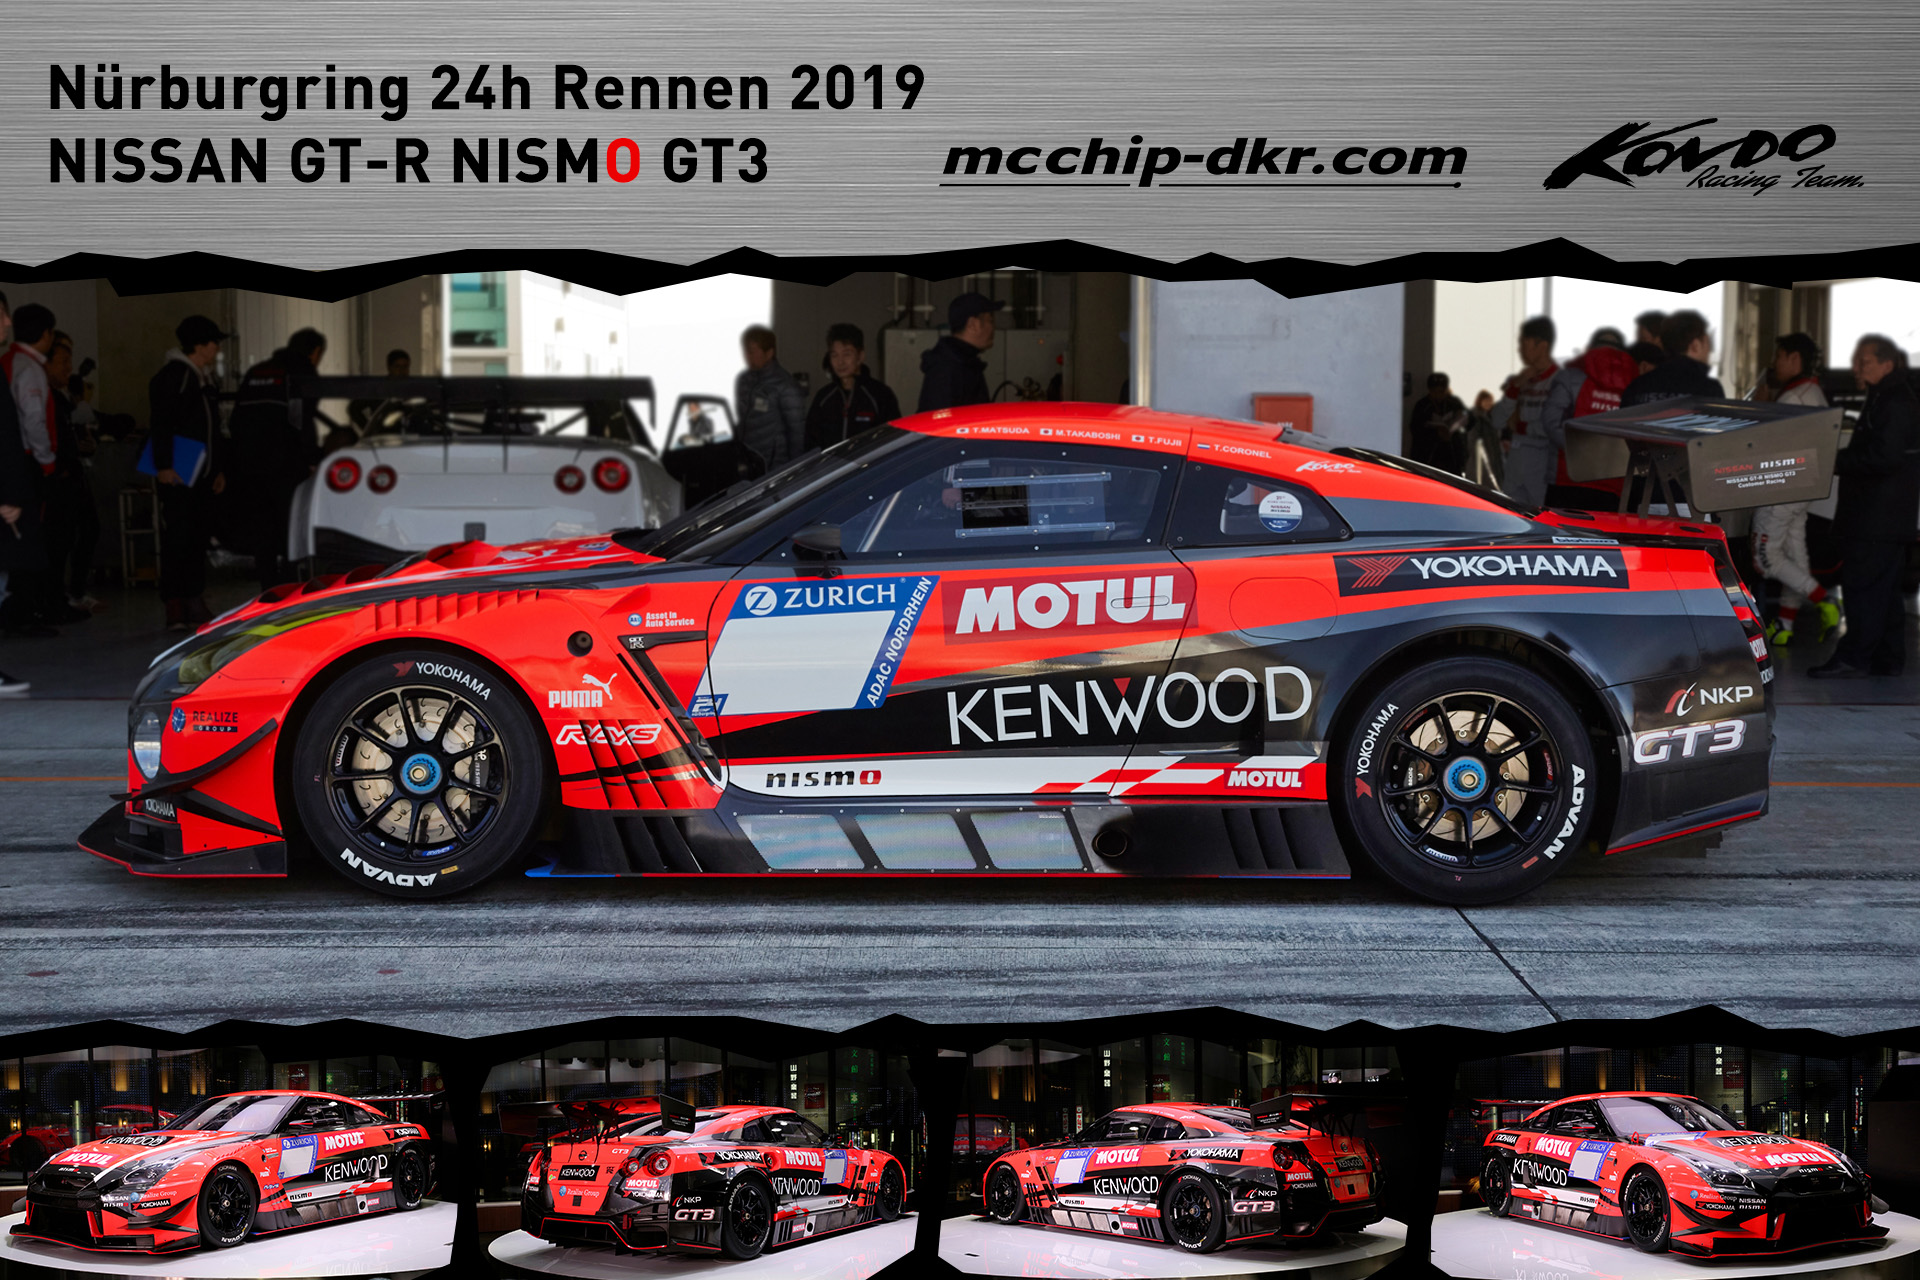 Nurburgring 24h Rennen 2019 Nissan Gt R Nismo Gt3 Mit Kondo